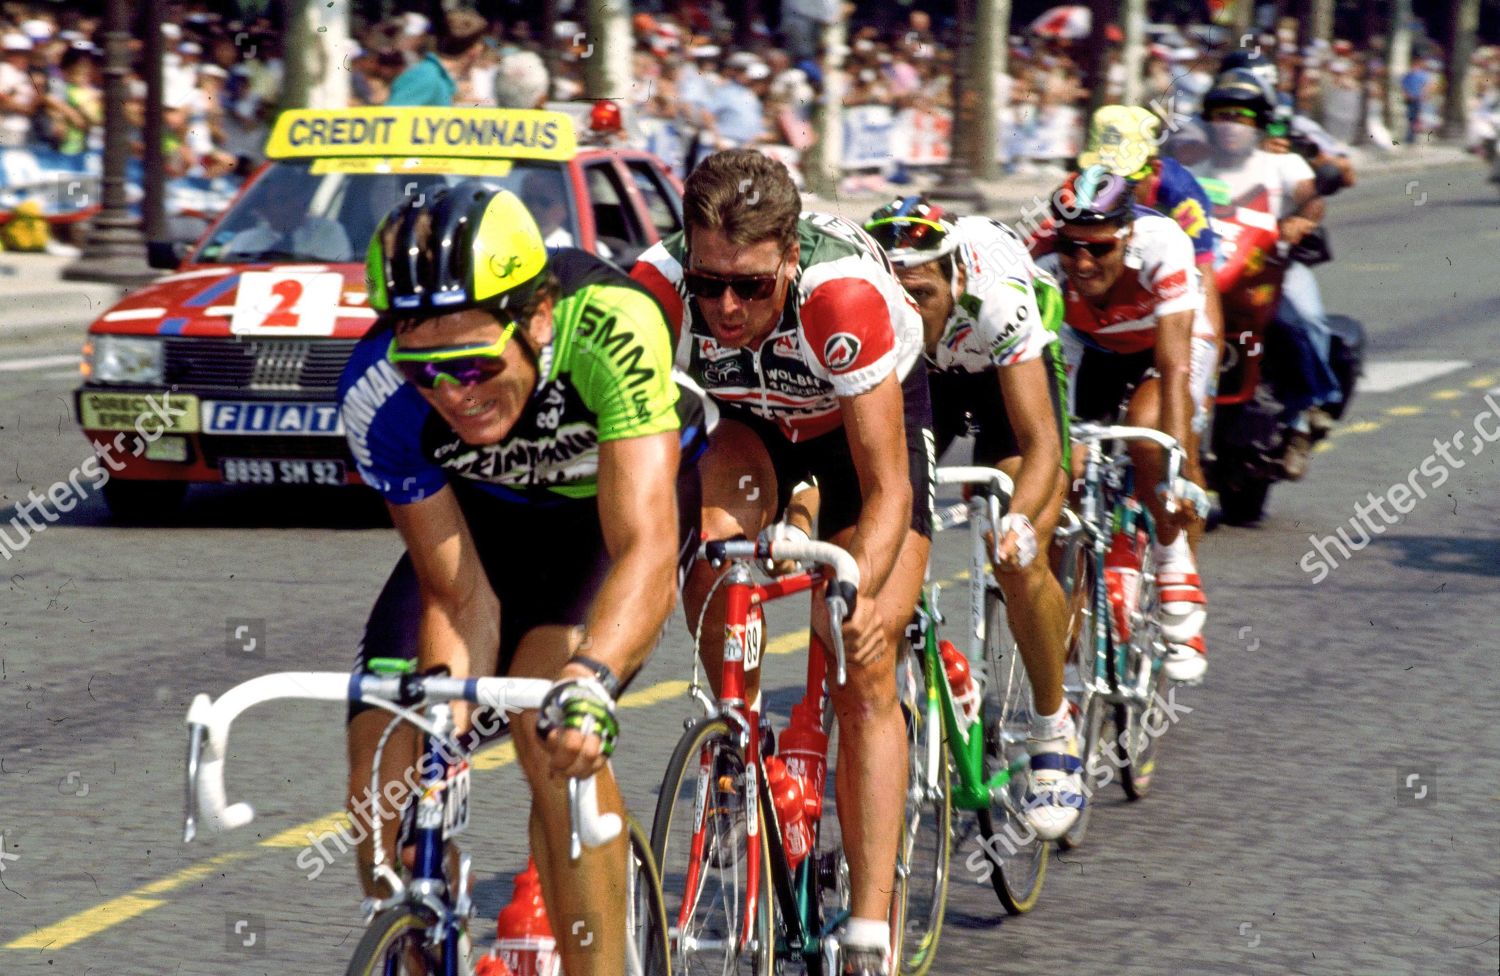 1988 tour de france stage 19